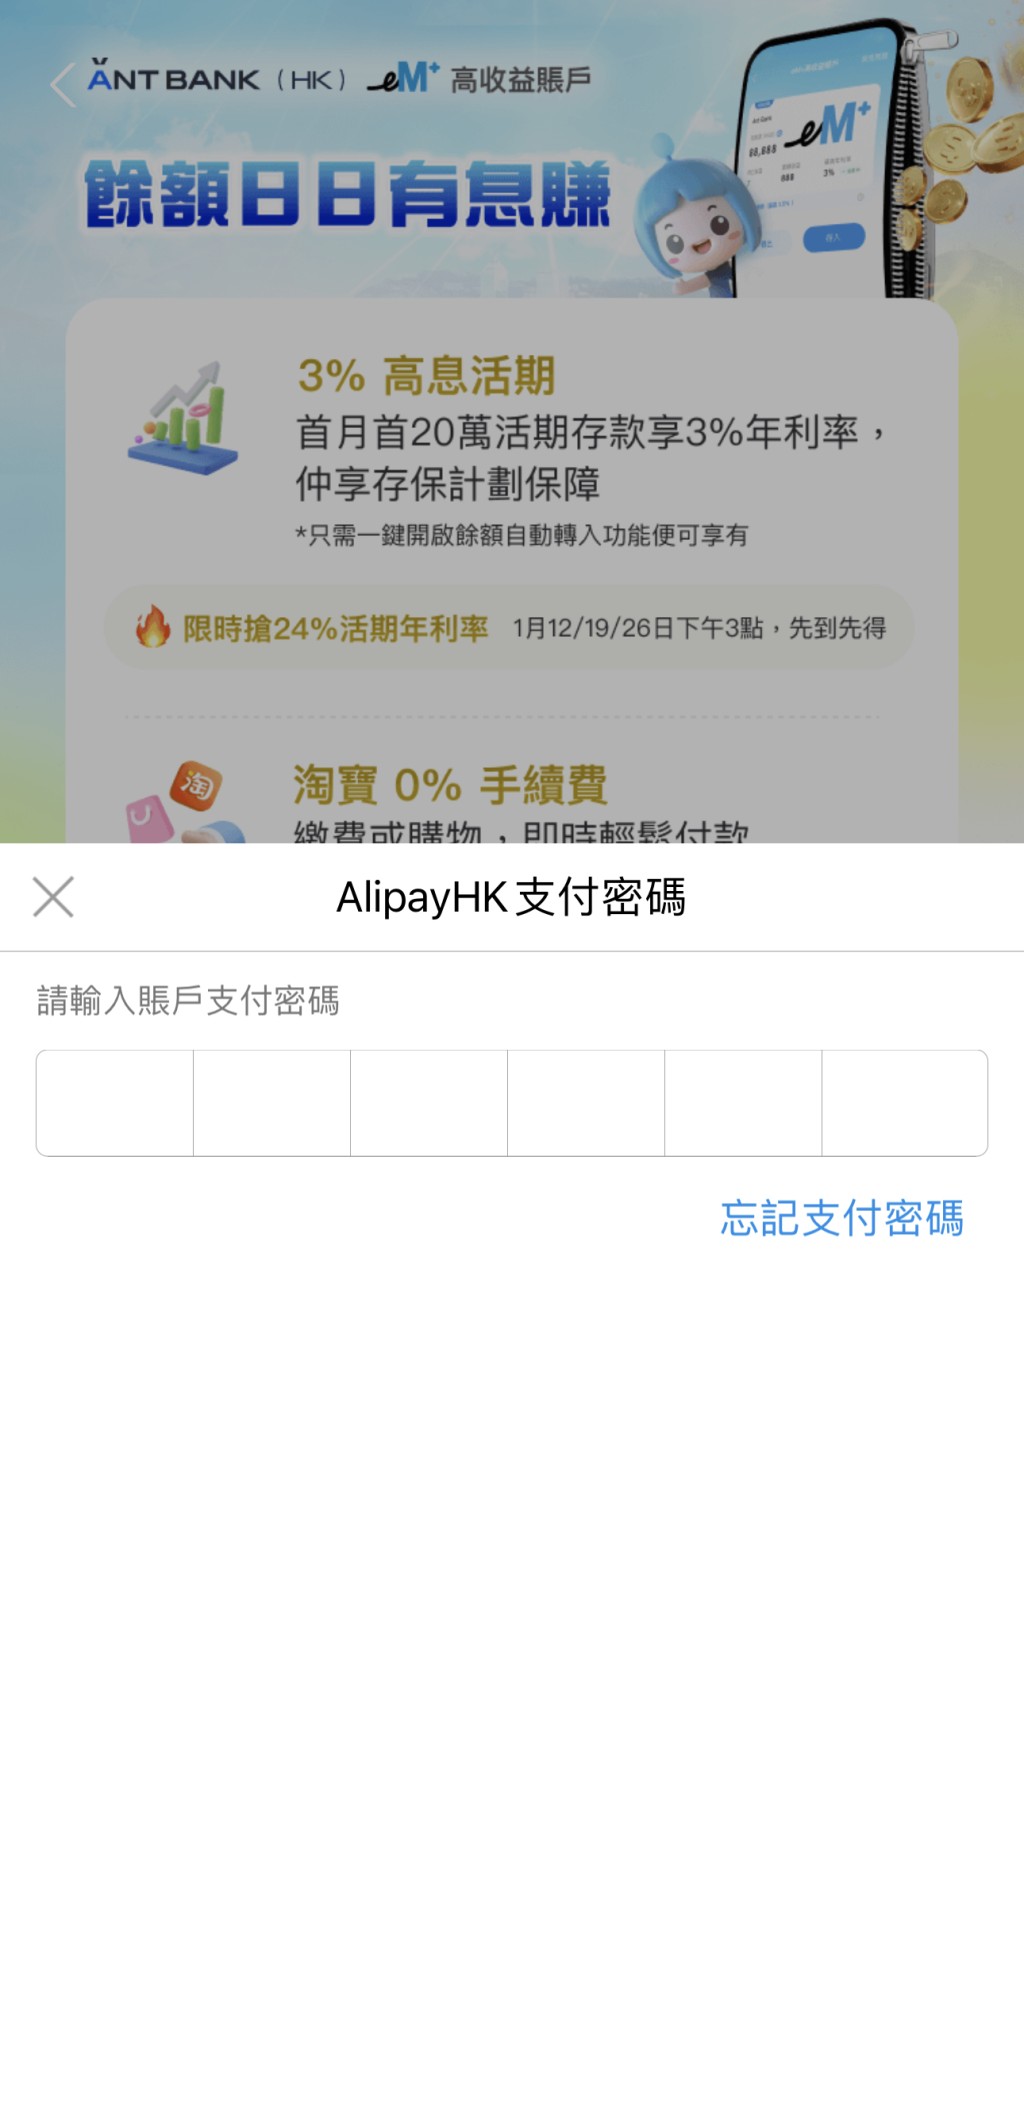 3. 输入AlipayHK支付密码确认同意和授权。